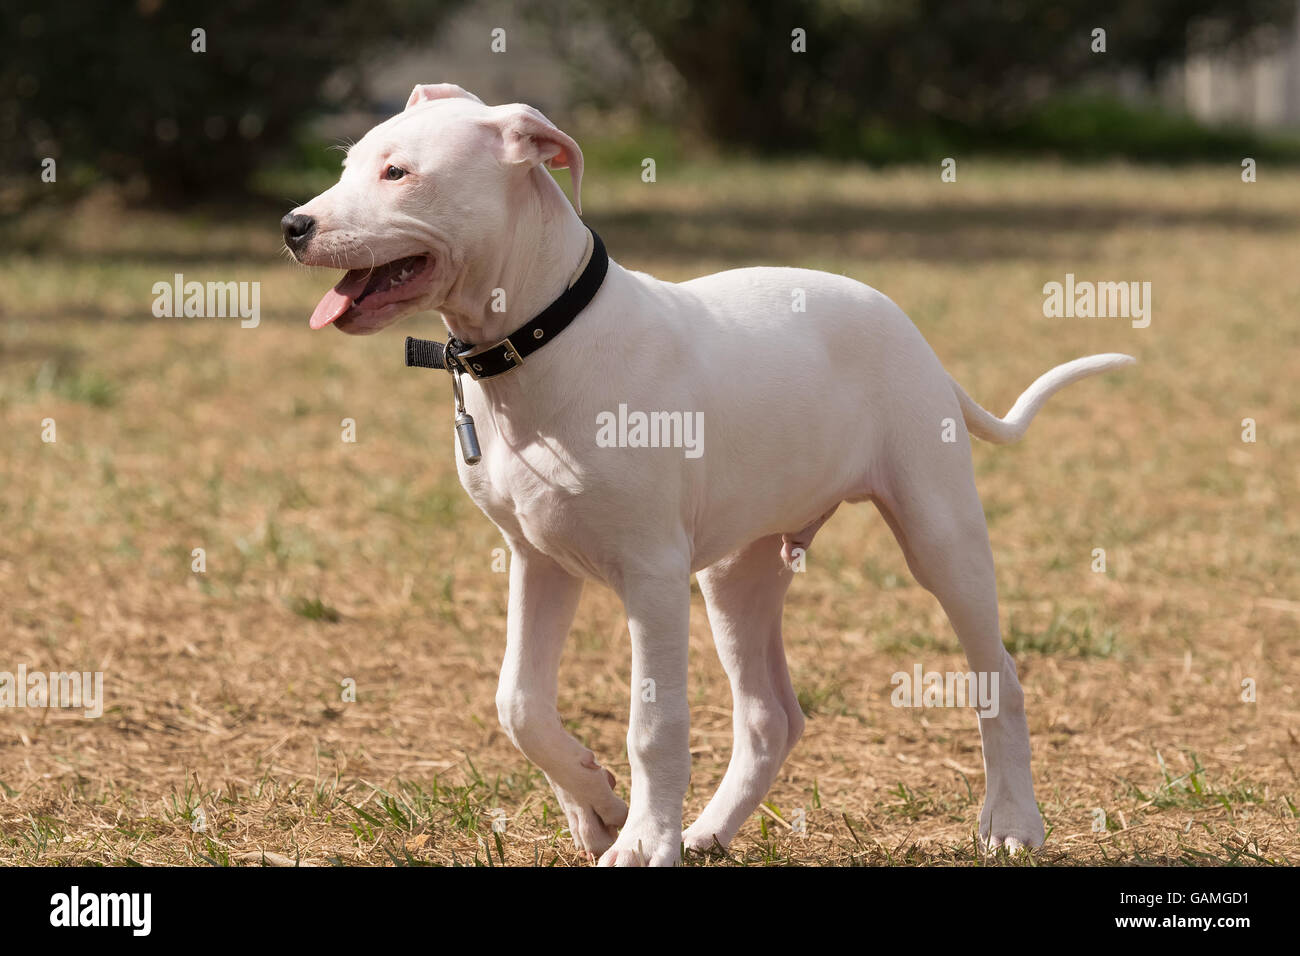 Puppy Dogo Argentino dog portrait. Stock Photo